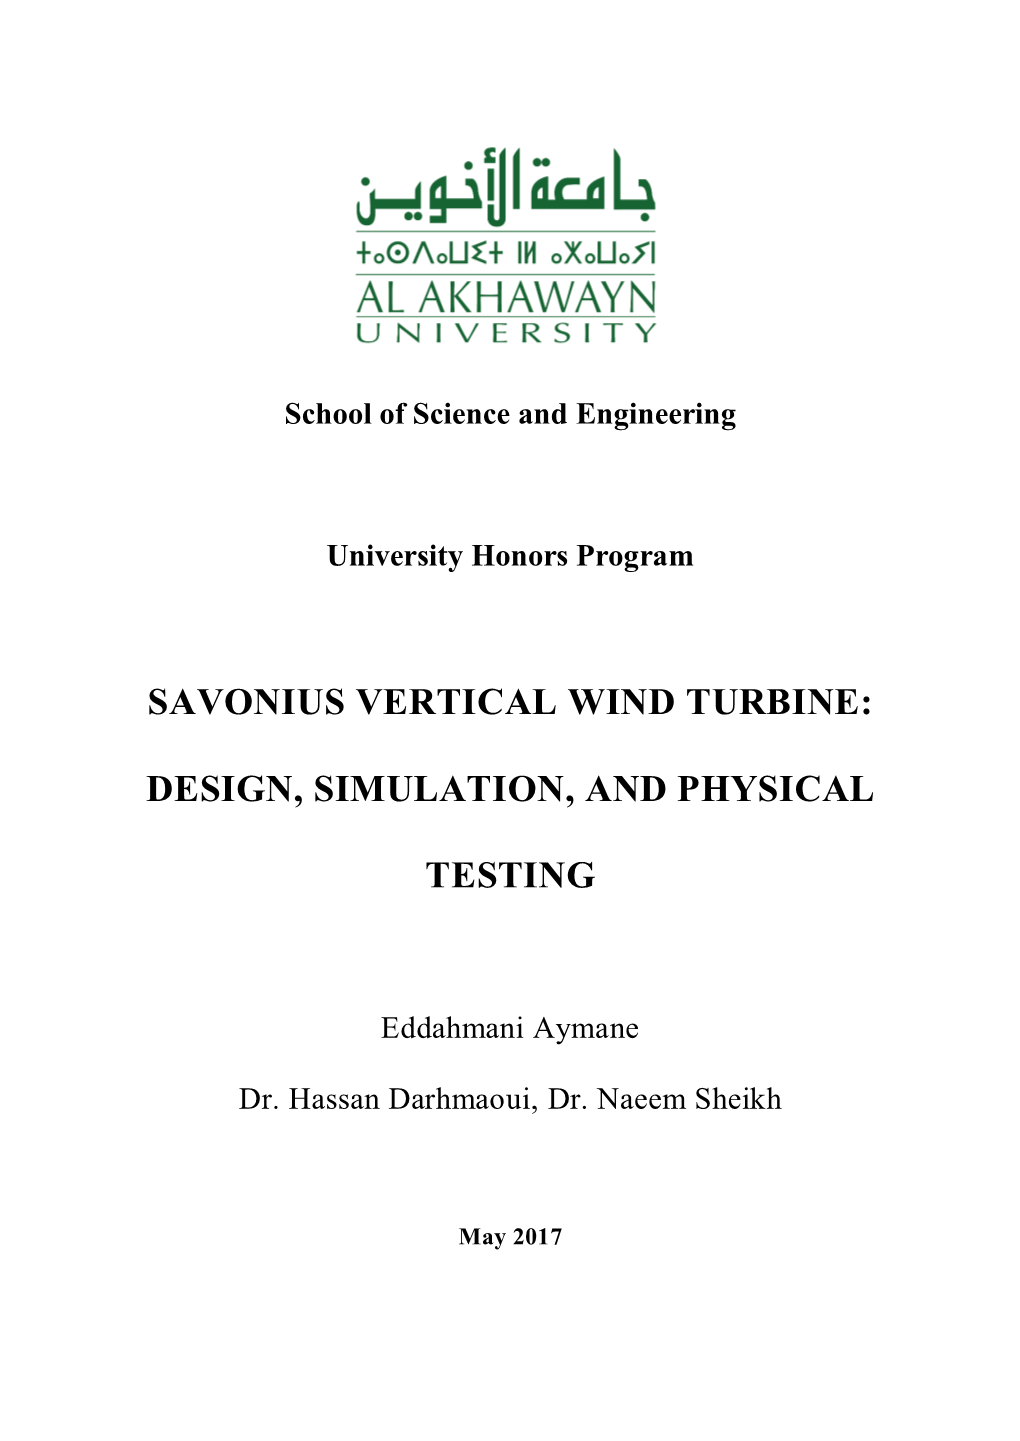 Savonius Vertical Wind Turbine